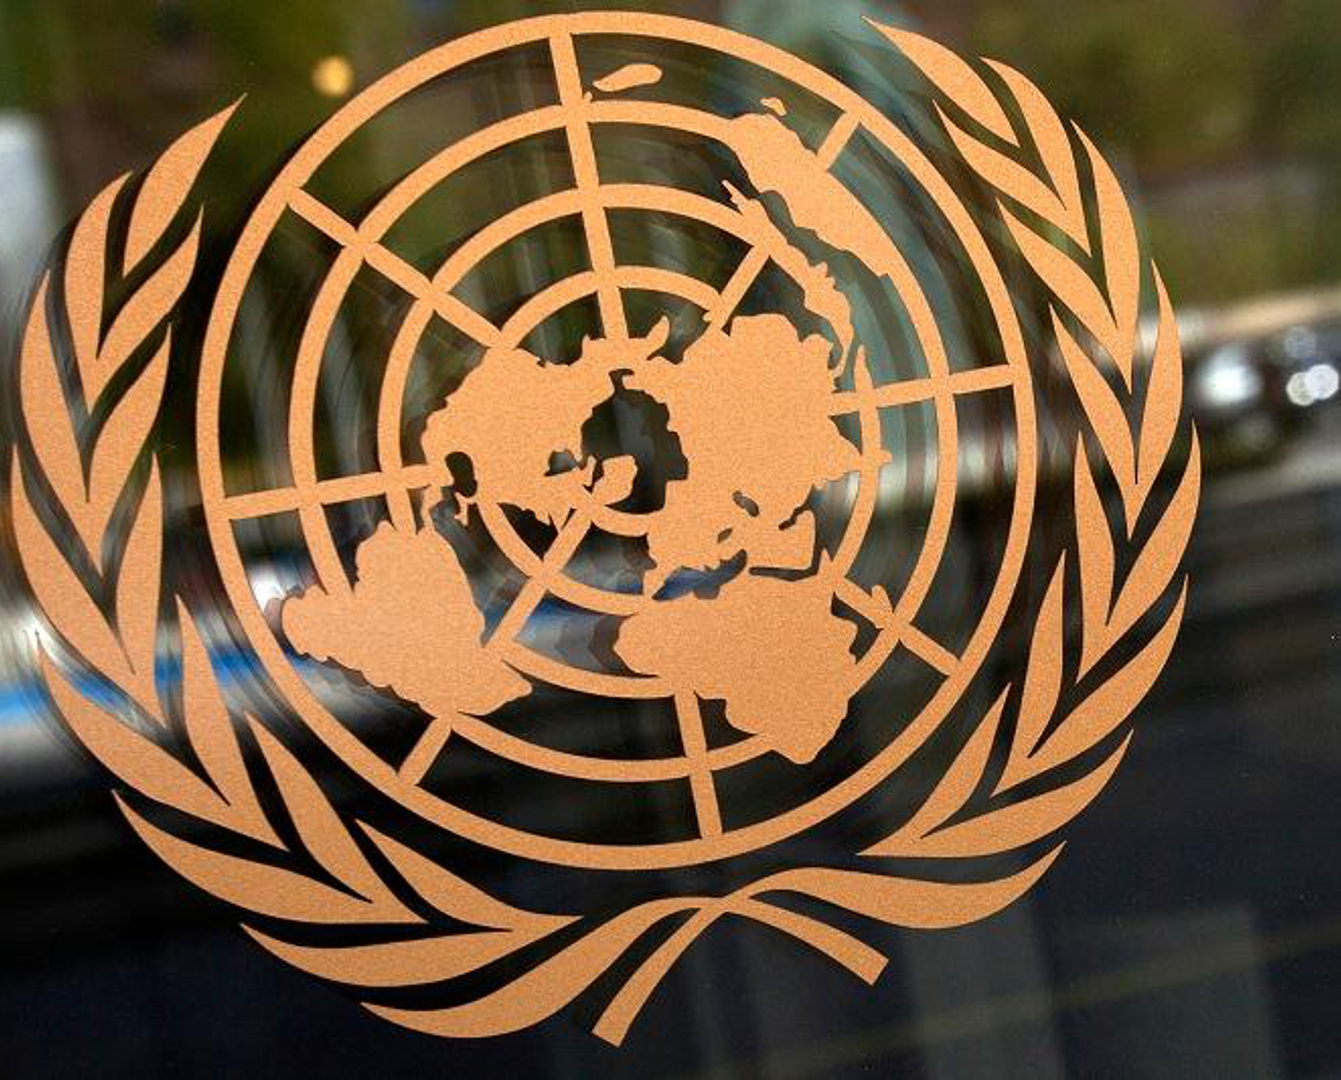 Kazakhstan supports the UN reform